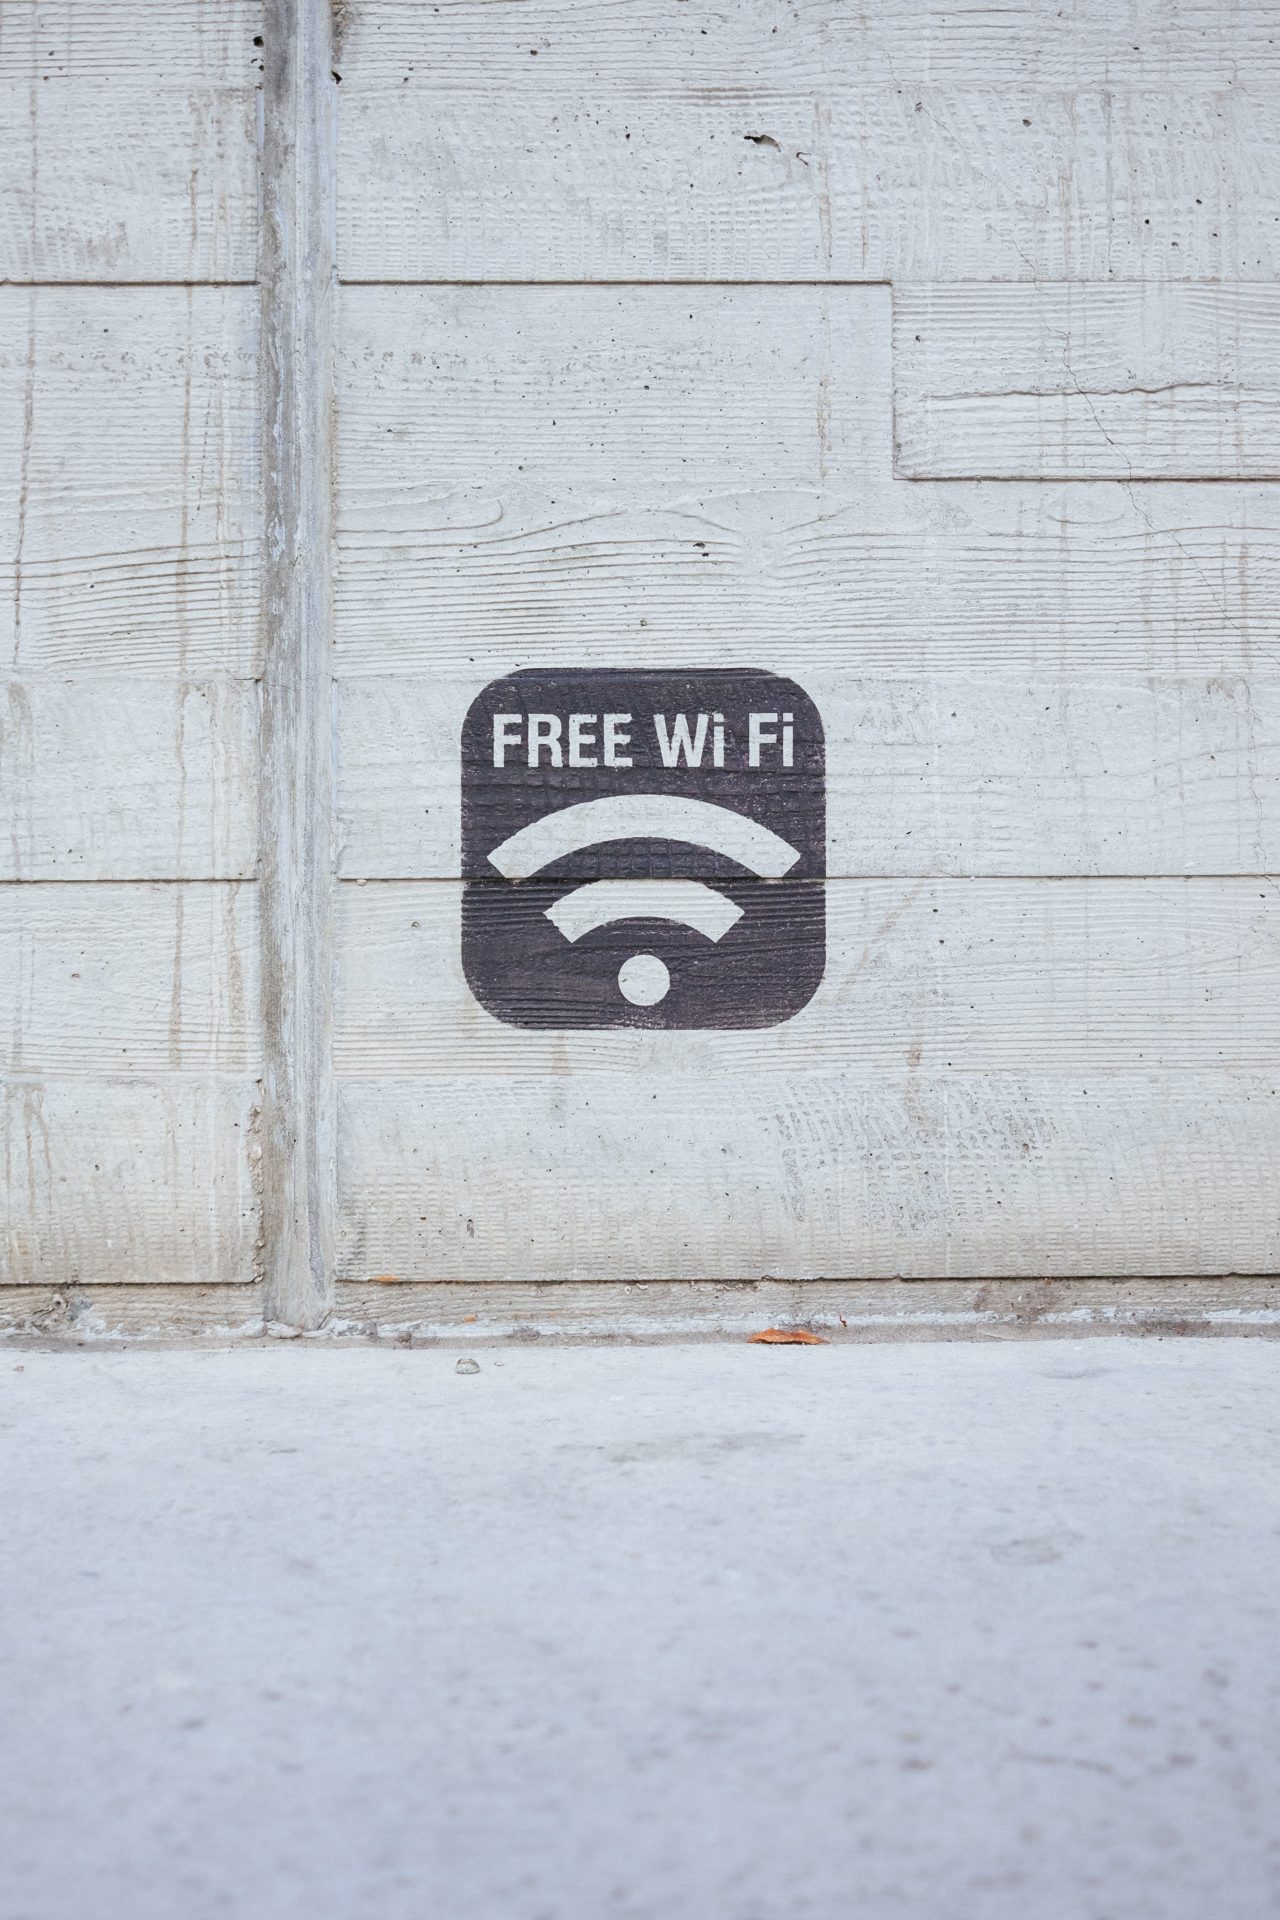 Cómo protegerse al usar Wi-Fi gratis